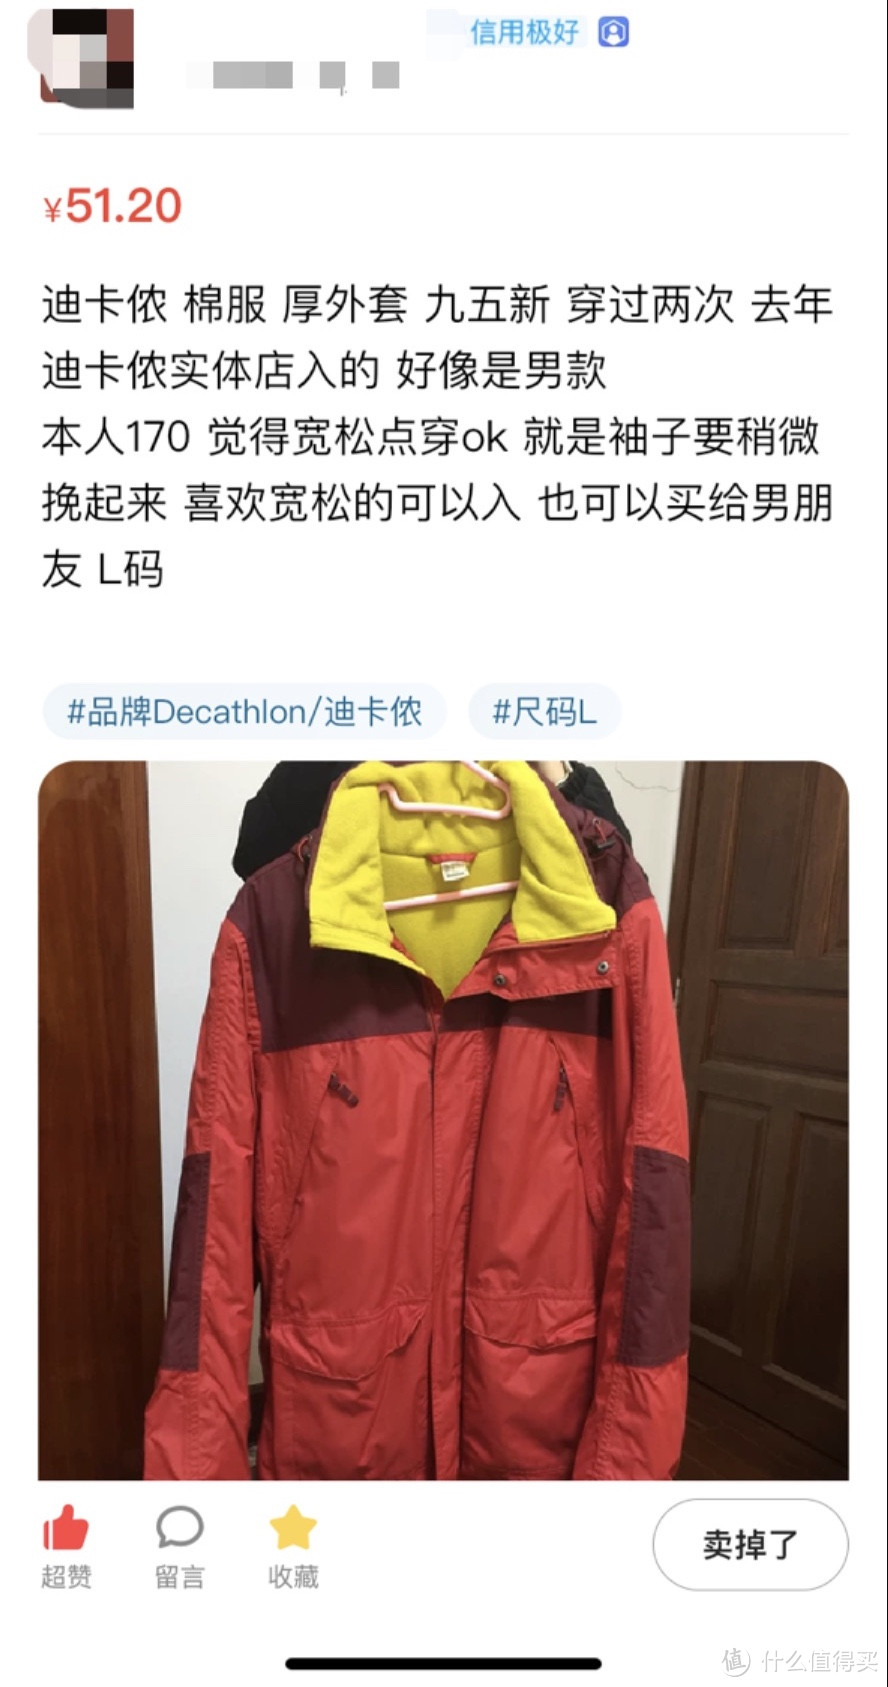 图书馆猿の迪卡侬 QUECHUA JKT RAINWARM 200 M 男式冲锋外套夹克 简单晒